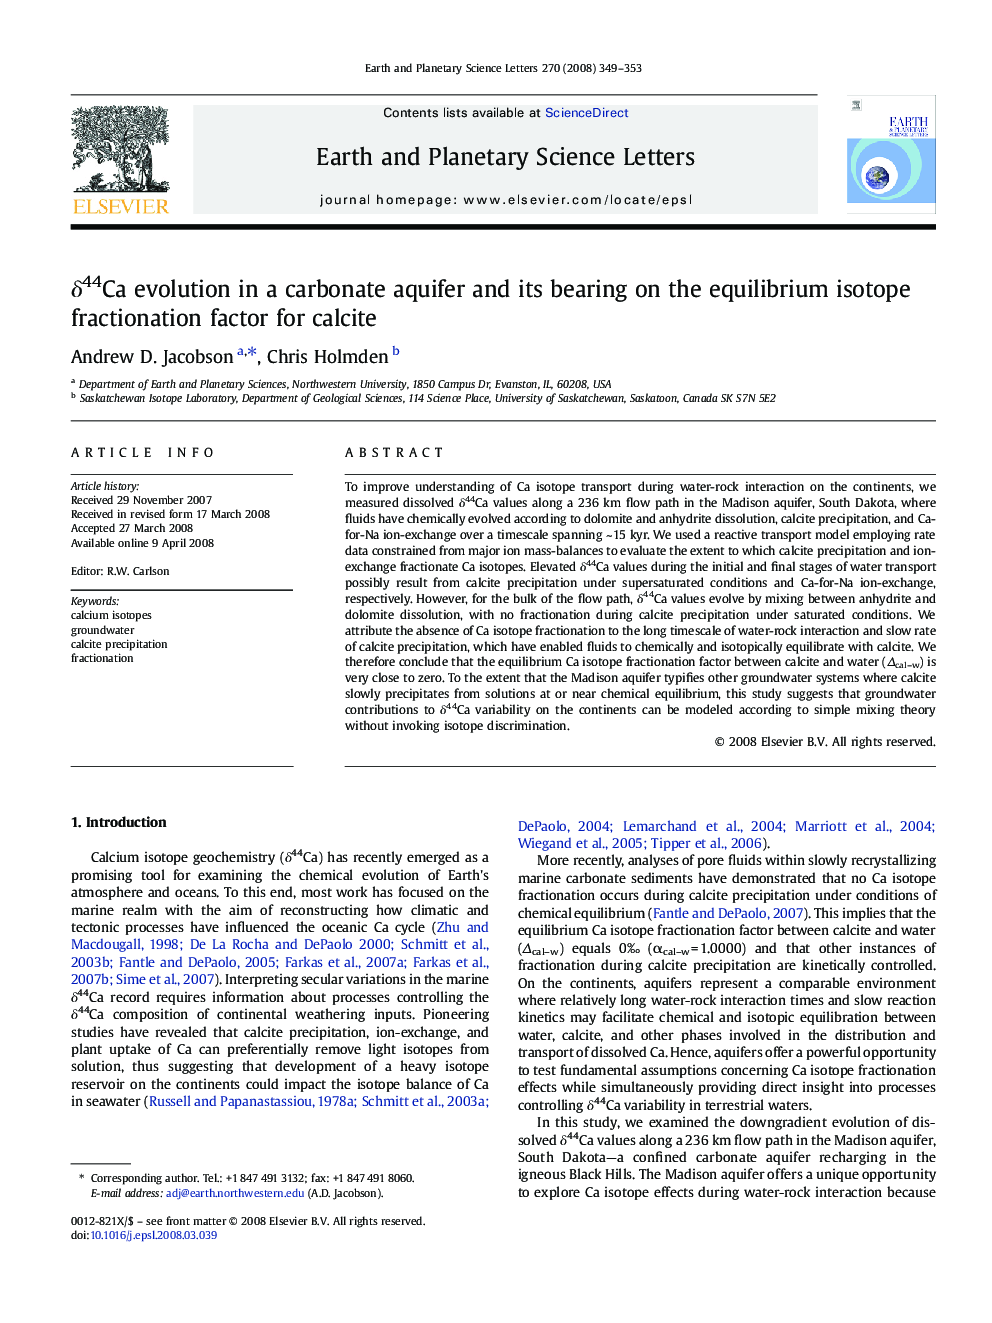 δ44Ca evolution in a carbonate aquifer and its bearing on the equilibrium isotope fractionation factor for calcite